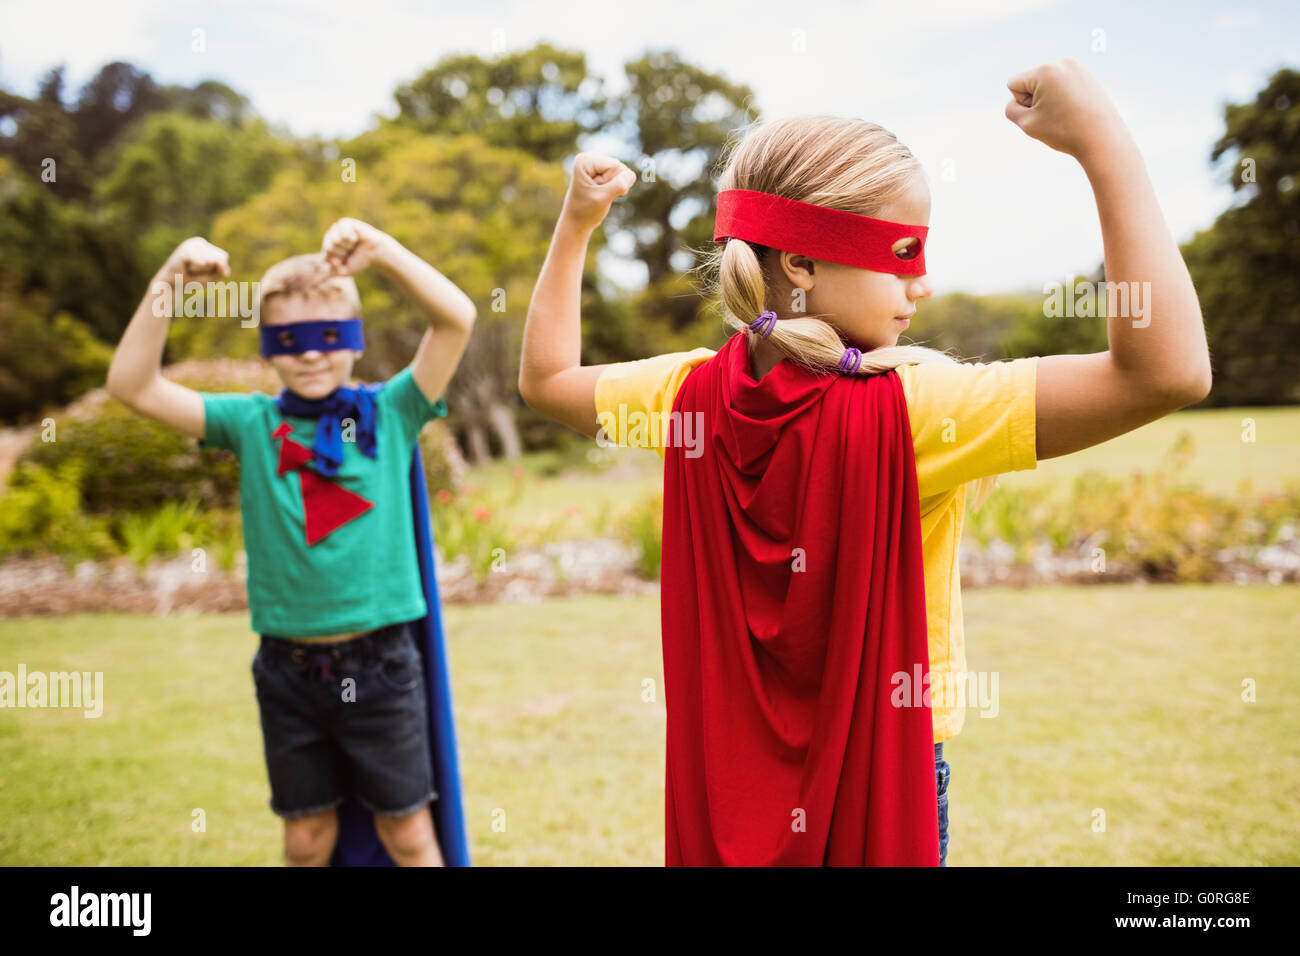 Enfants wearing superhero costume posant pour l'appareil photo Banque D'Images